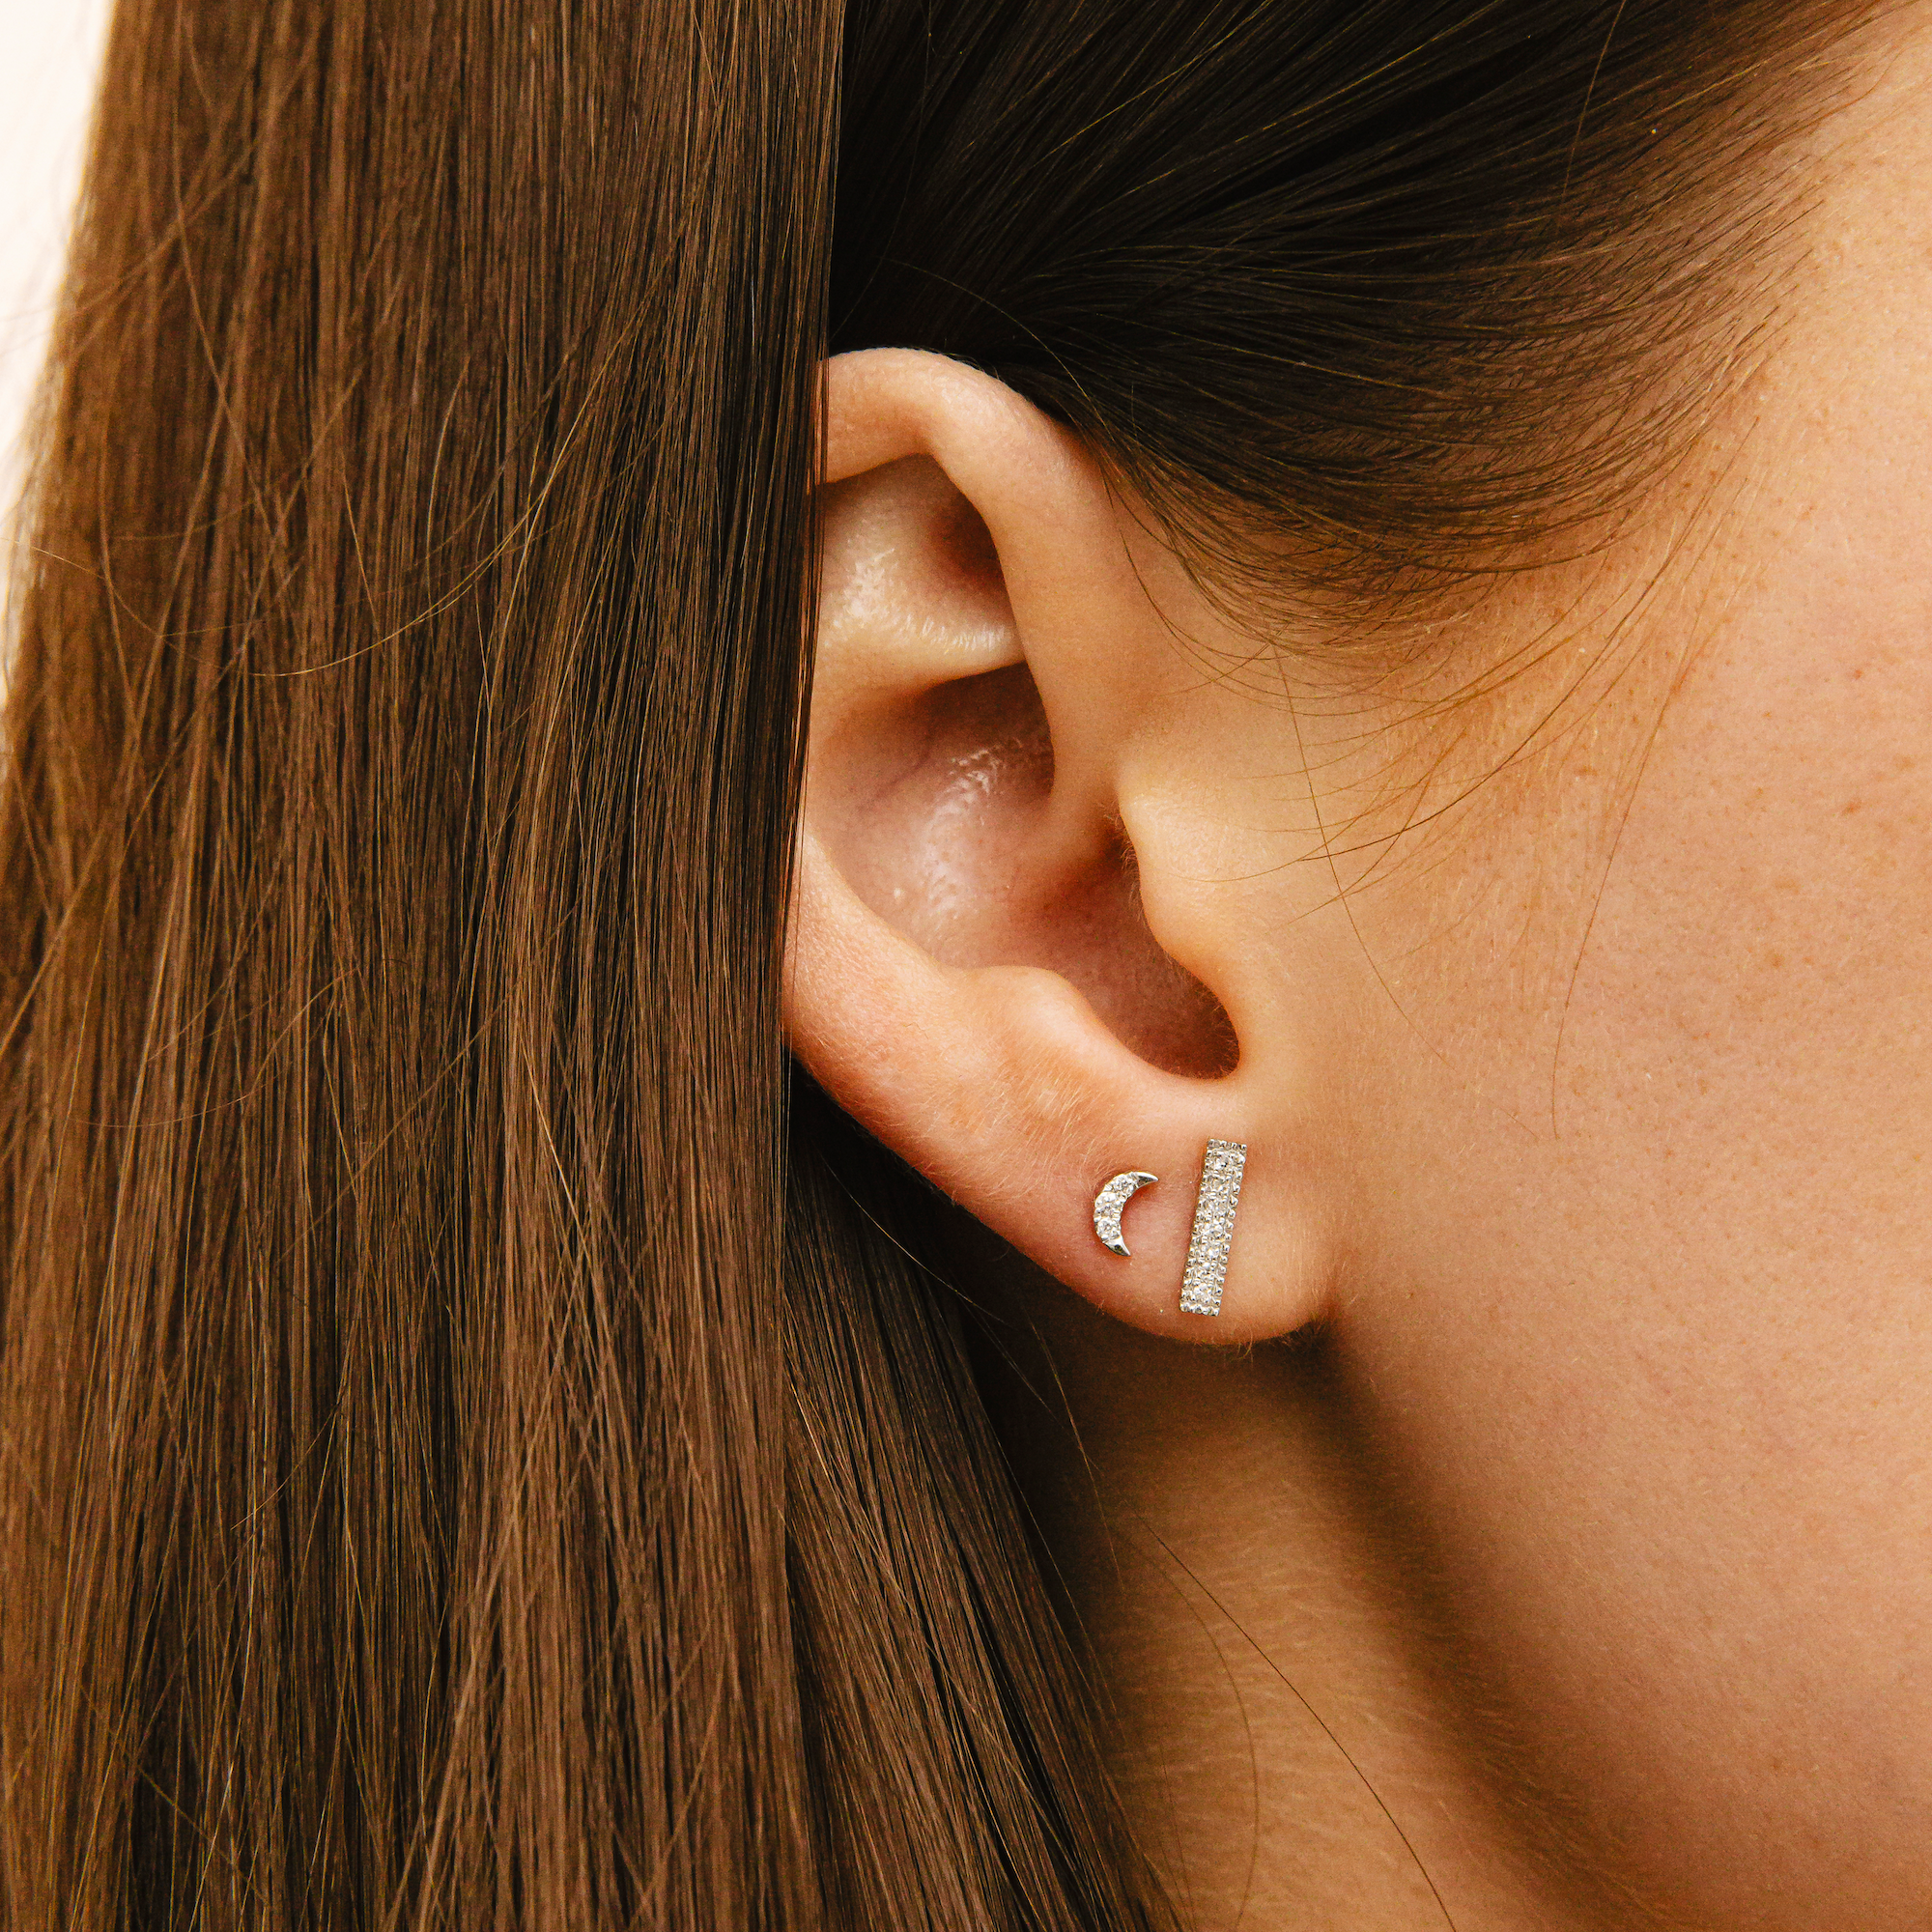 White Gold-2^Designer Stud Earrings: Mini Crescent Moon Studs in White Gold